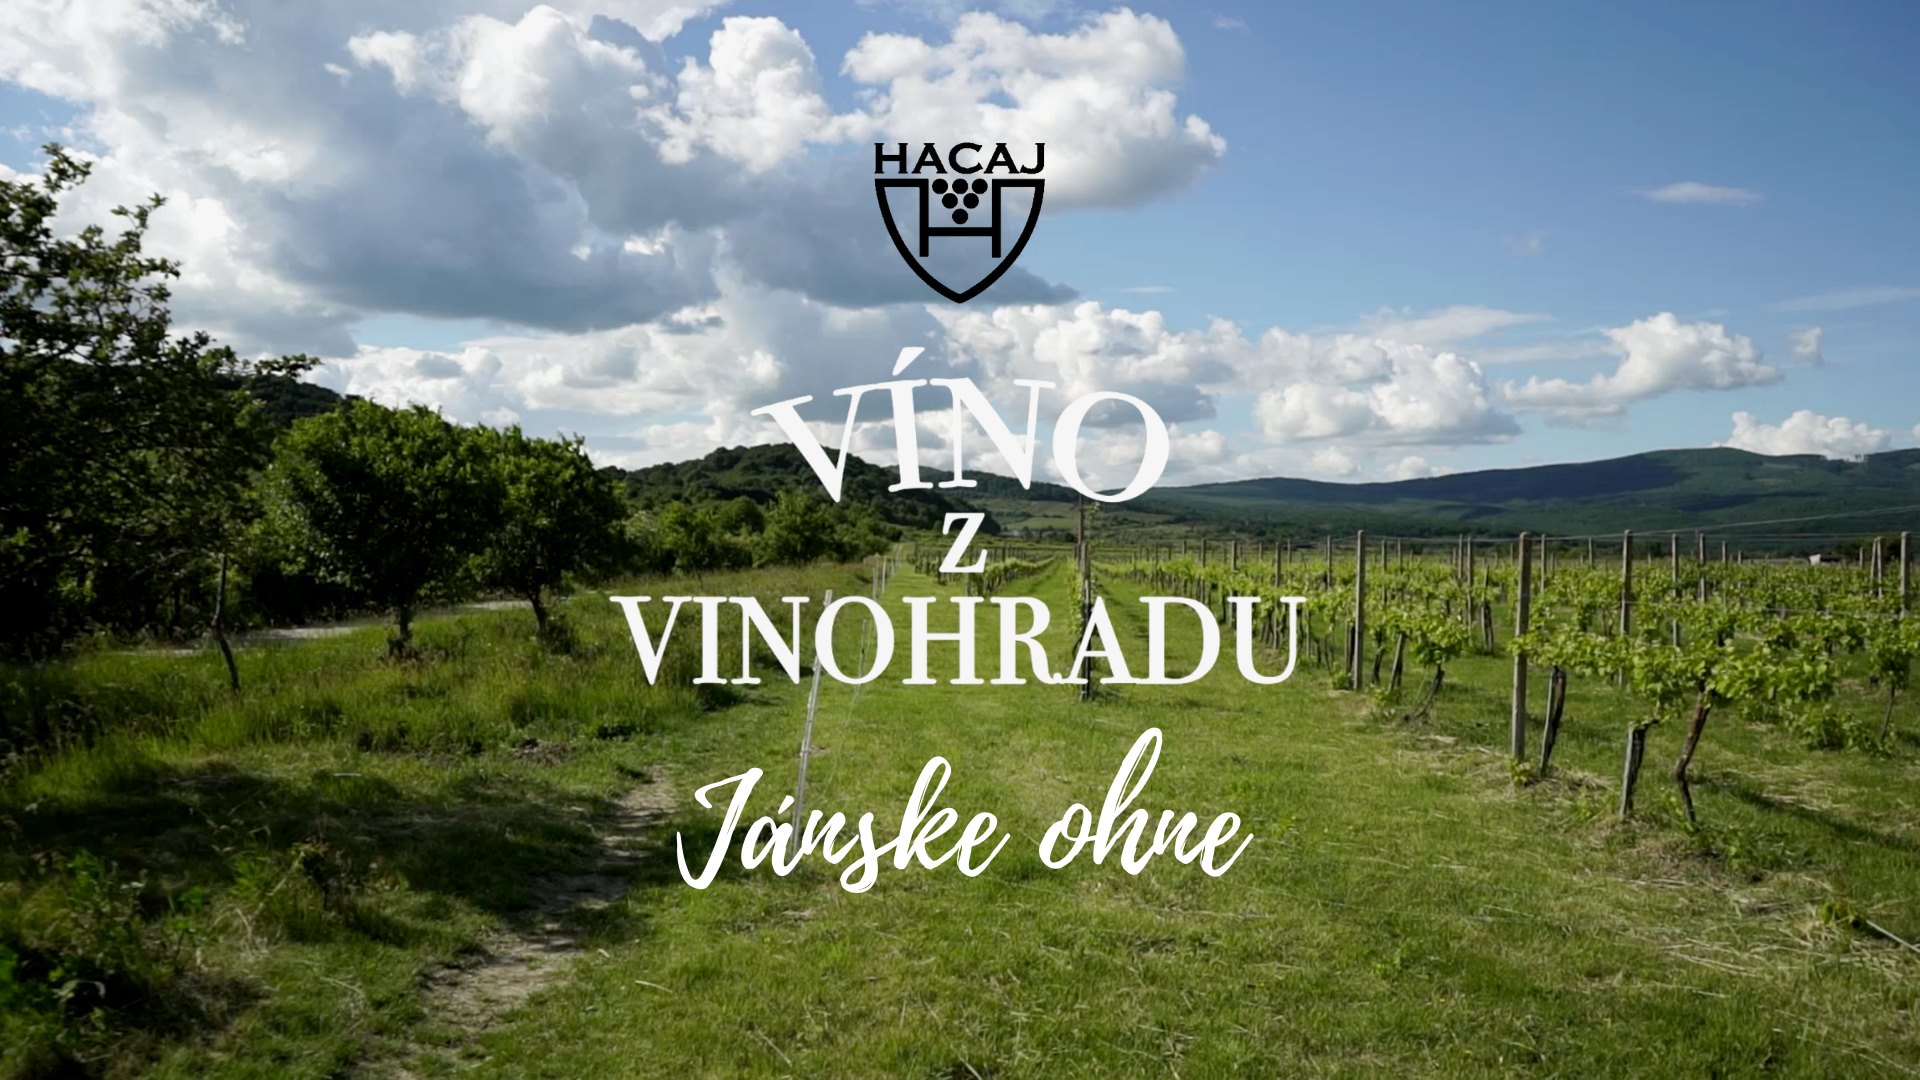 NOVÉ - - - Víno z vinohradu - Jánske ohne Pezinok 2020 a súťaž v pečení ríbezľových koláčov